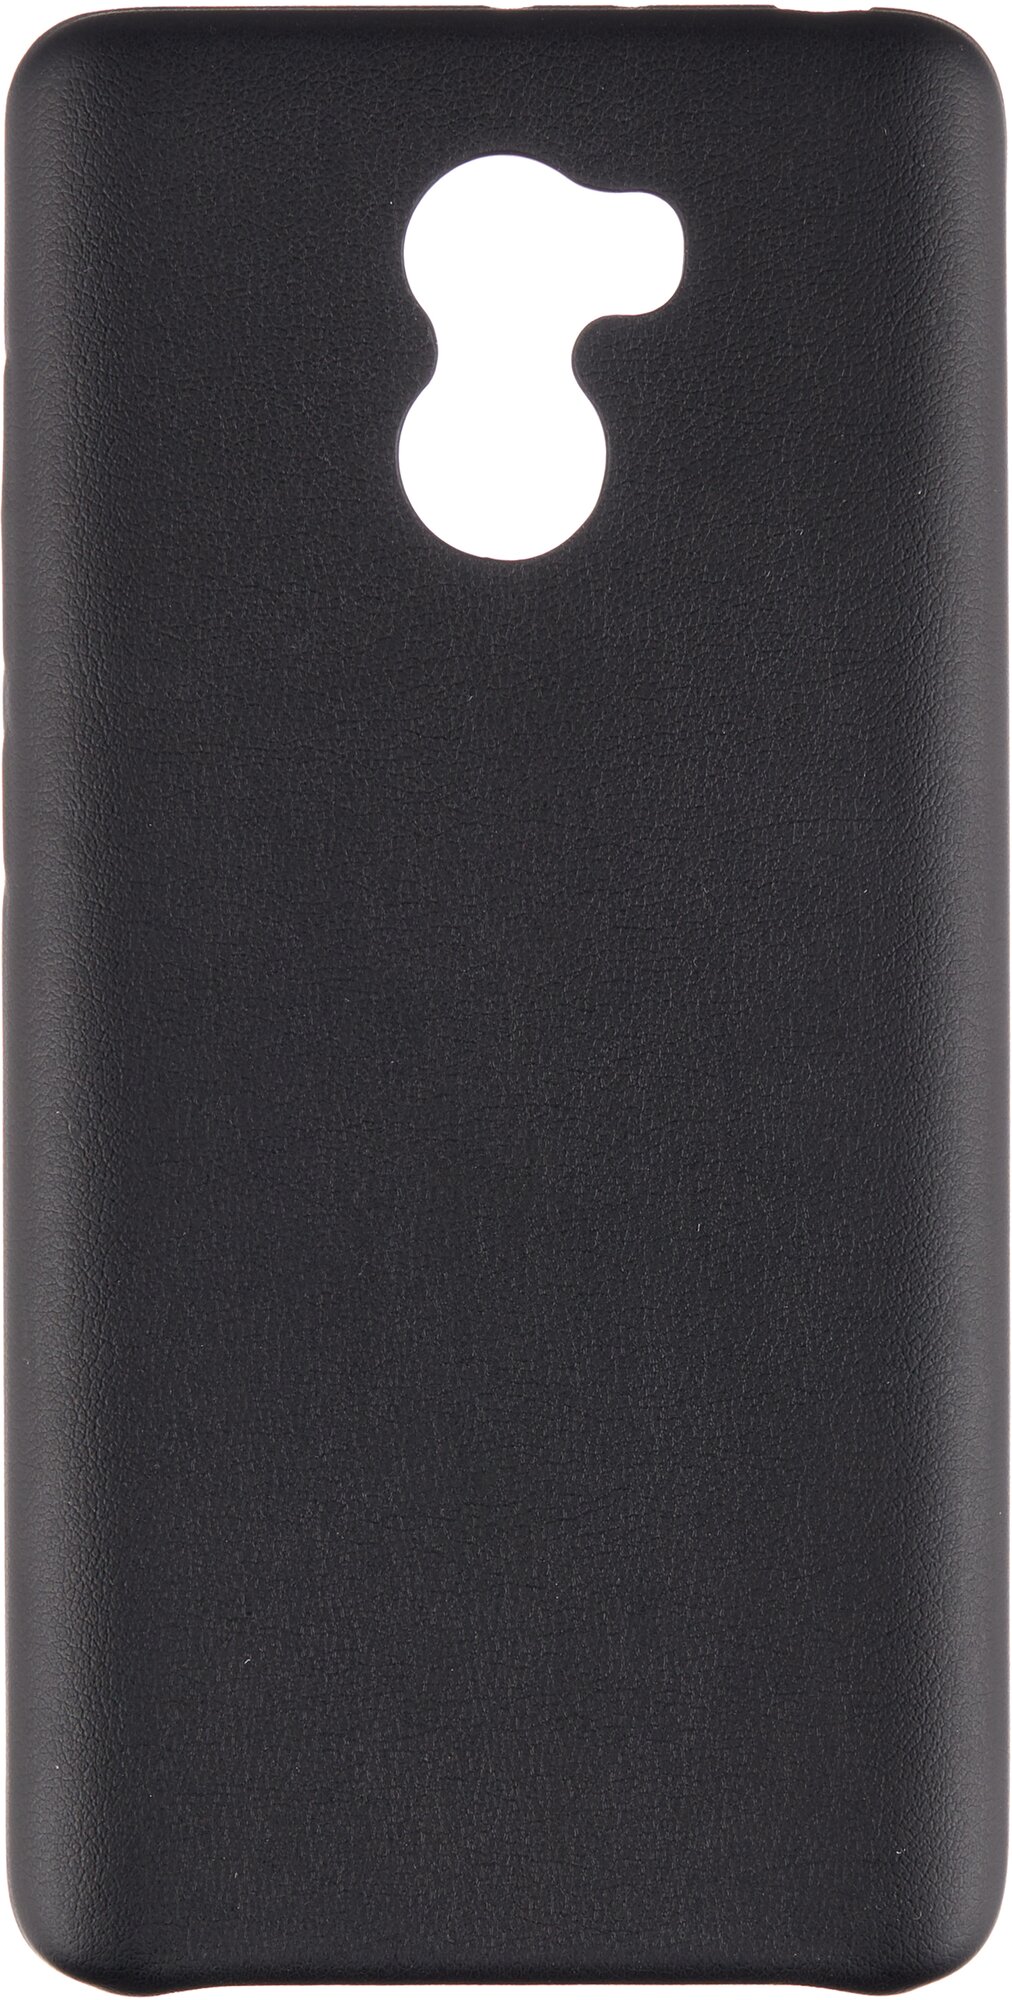 Накладка G-Case Slim Premium для Xiaomi Redmi 4 черная